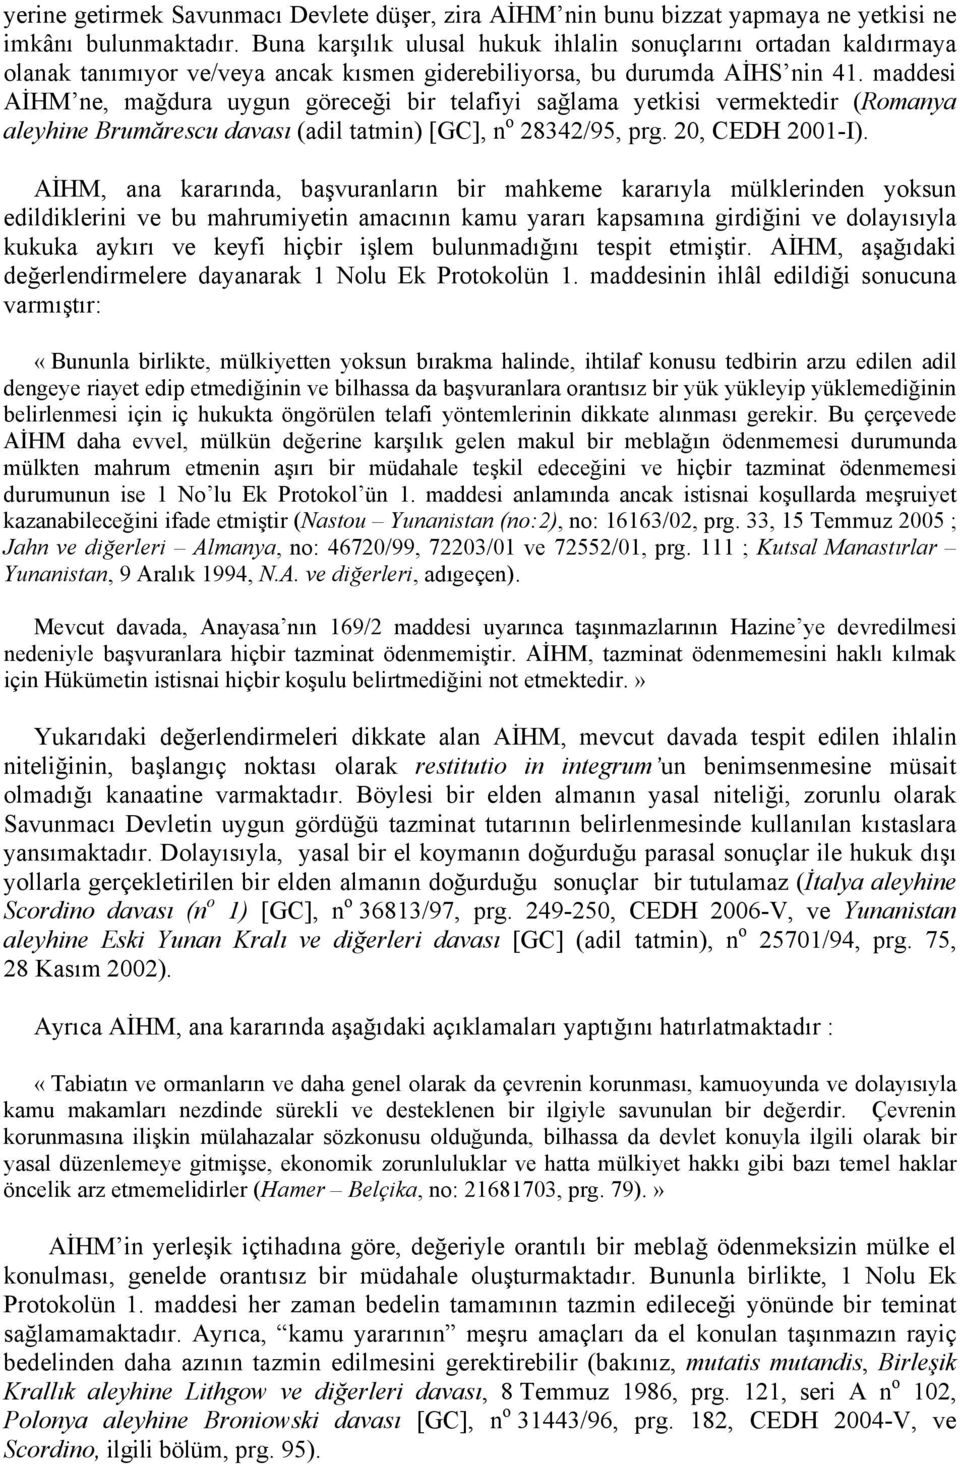 maddesi AİHM ne, mağdura uygun göreceği bir telafiyi sağlama yetkisi vermektedir (Romanya aleyhine Brumărescu davası (adil tatmin) [GC], n o 28342/95, prg. 20, CEDH 2001-I).